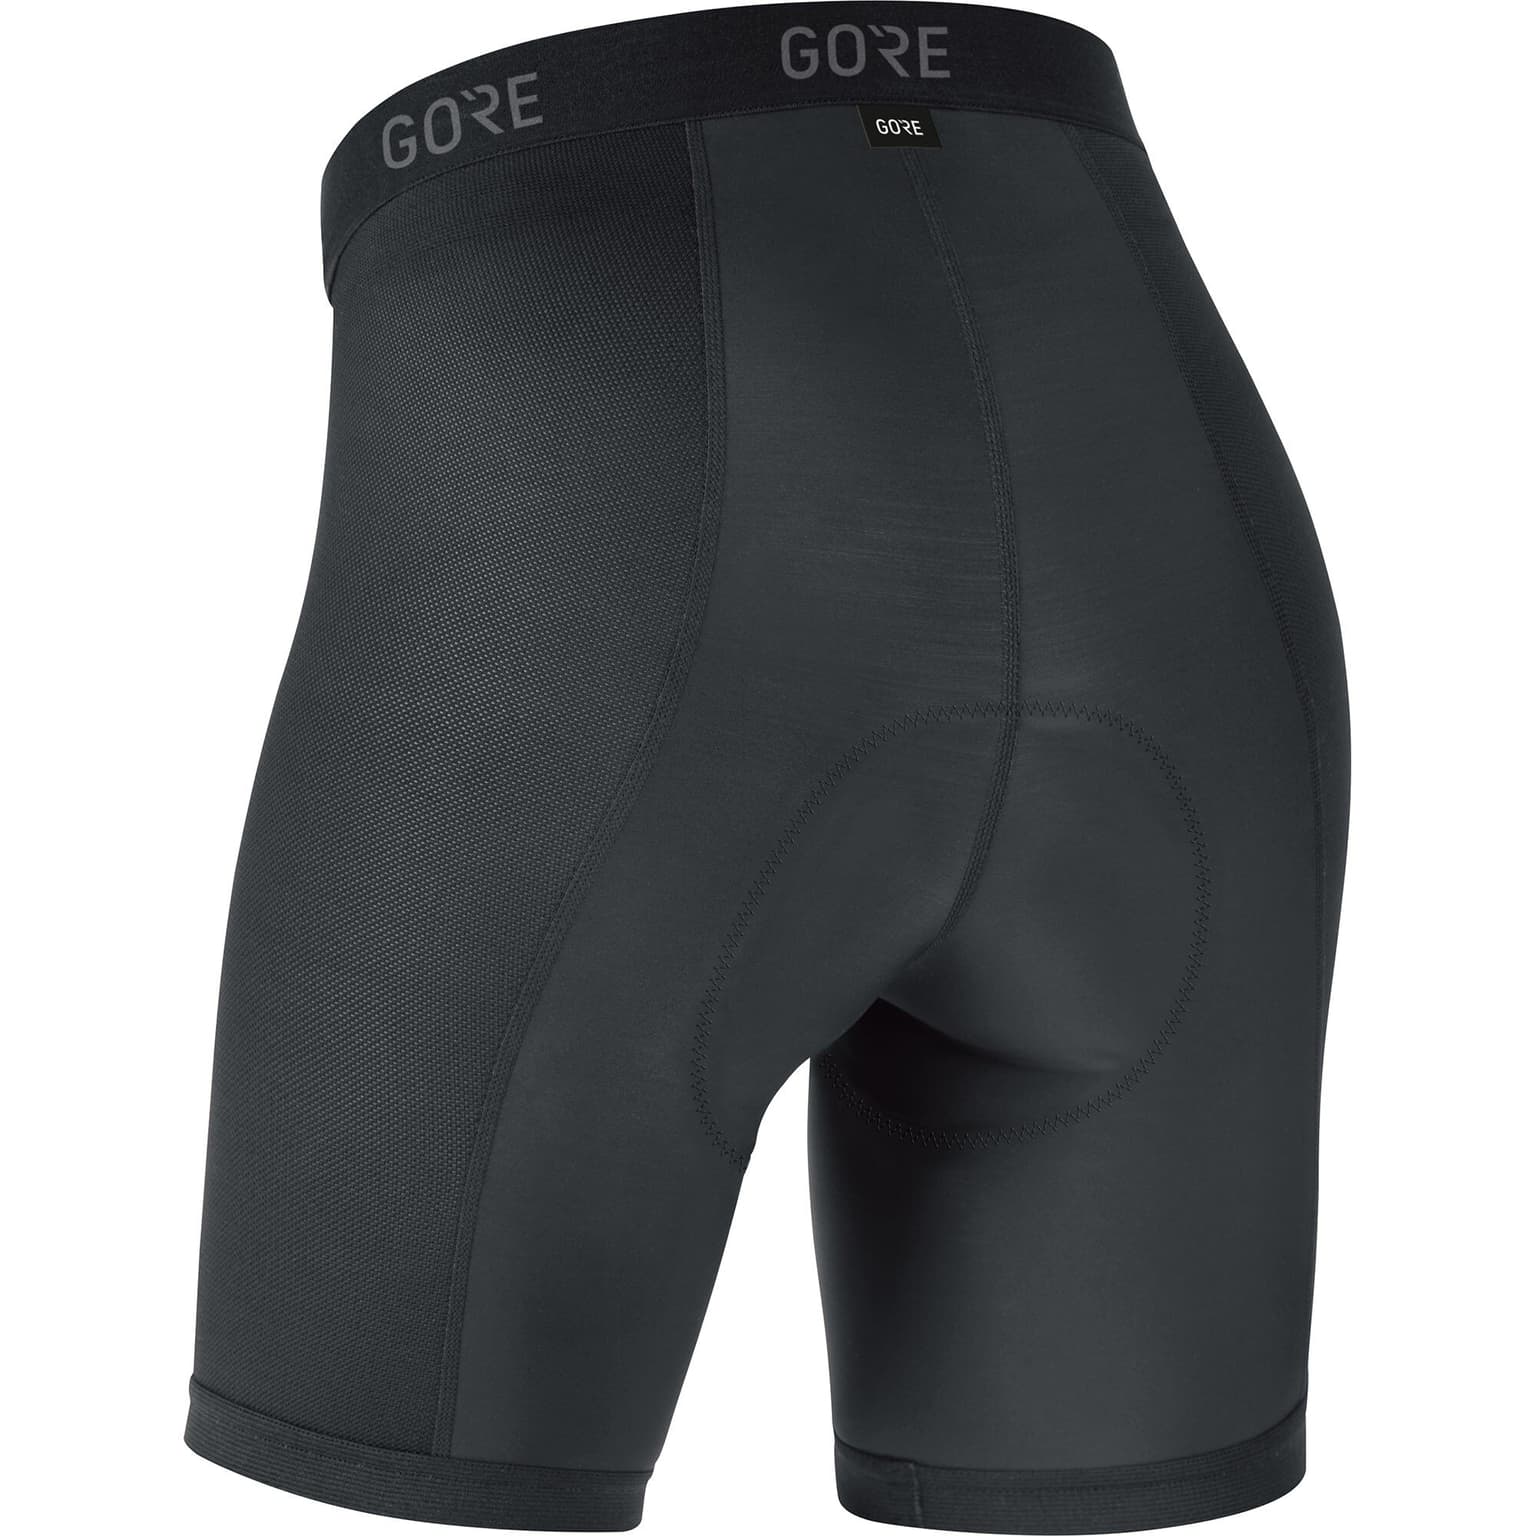 Gore Gore C3 Liner Short Tights+ Sous-vêtement de cyclisme noir 2